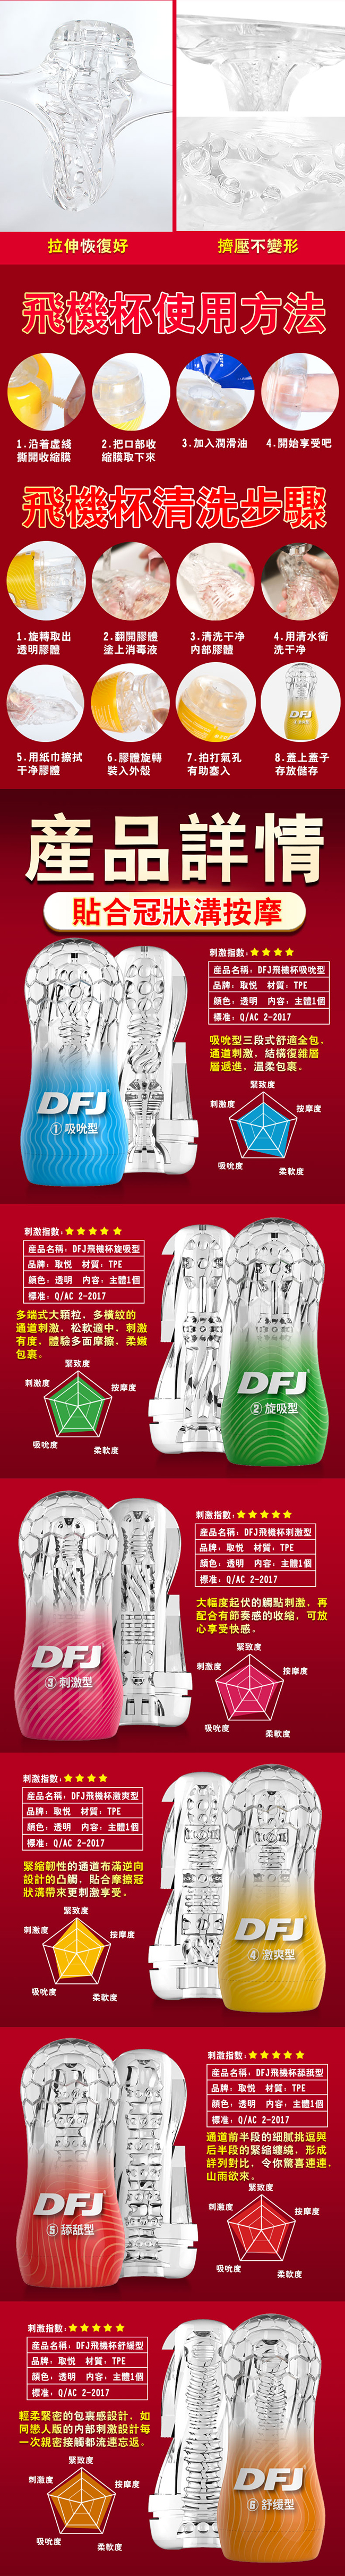 DFJ水晶杯 全包裹式吸吮立體通道自慰杯-吸吮型